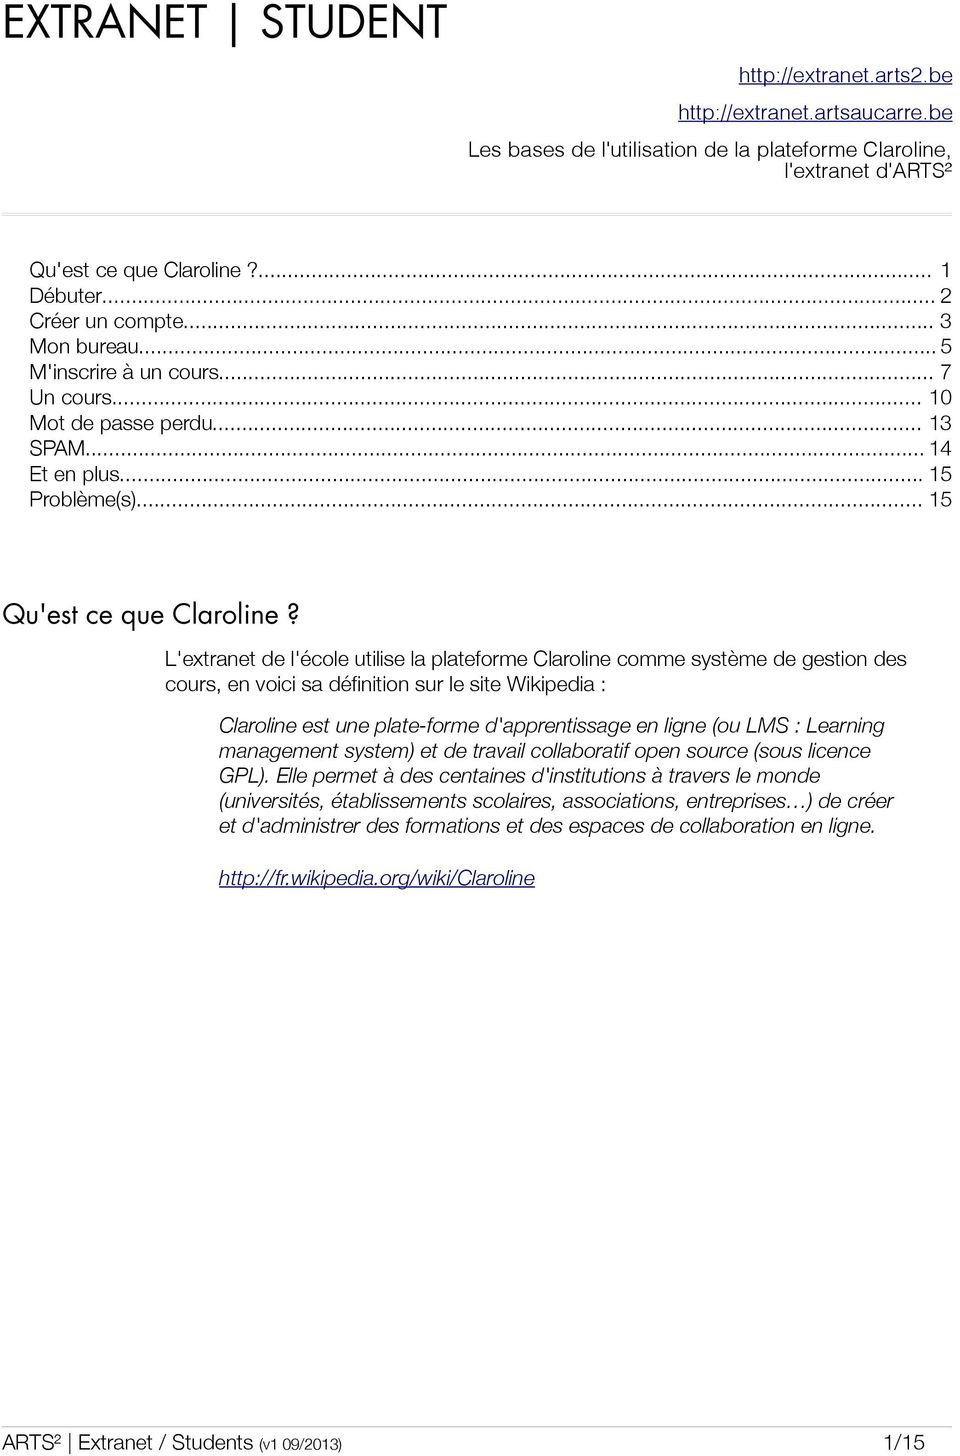 L'extranet de l'école utilise la plateforme Claroline comme système de gestion des cours, en voici sa définition sur le site Wikipedia : Claroline est une plate-forme d'apprentissage en ligne (ou LMS